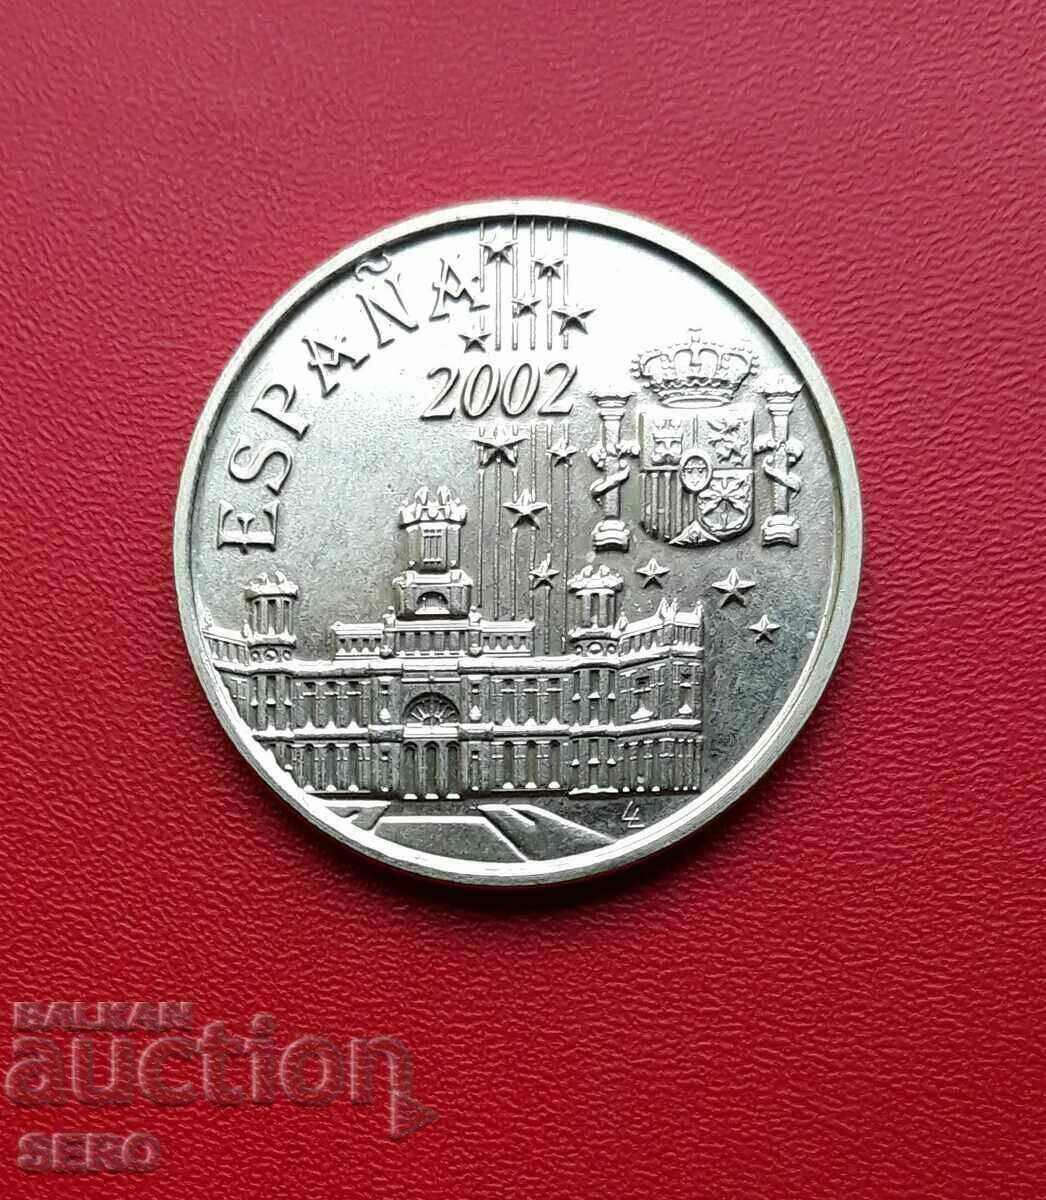 Spain-medal 2002-United Europe